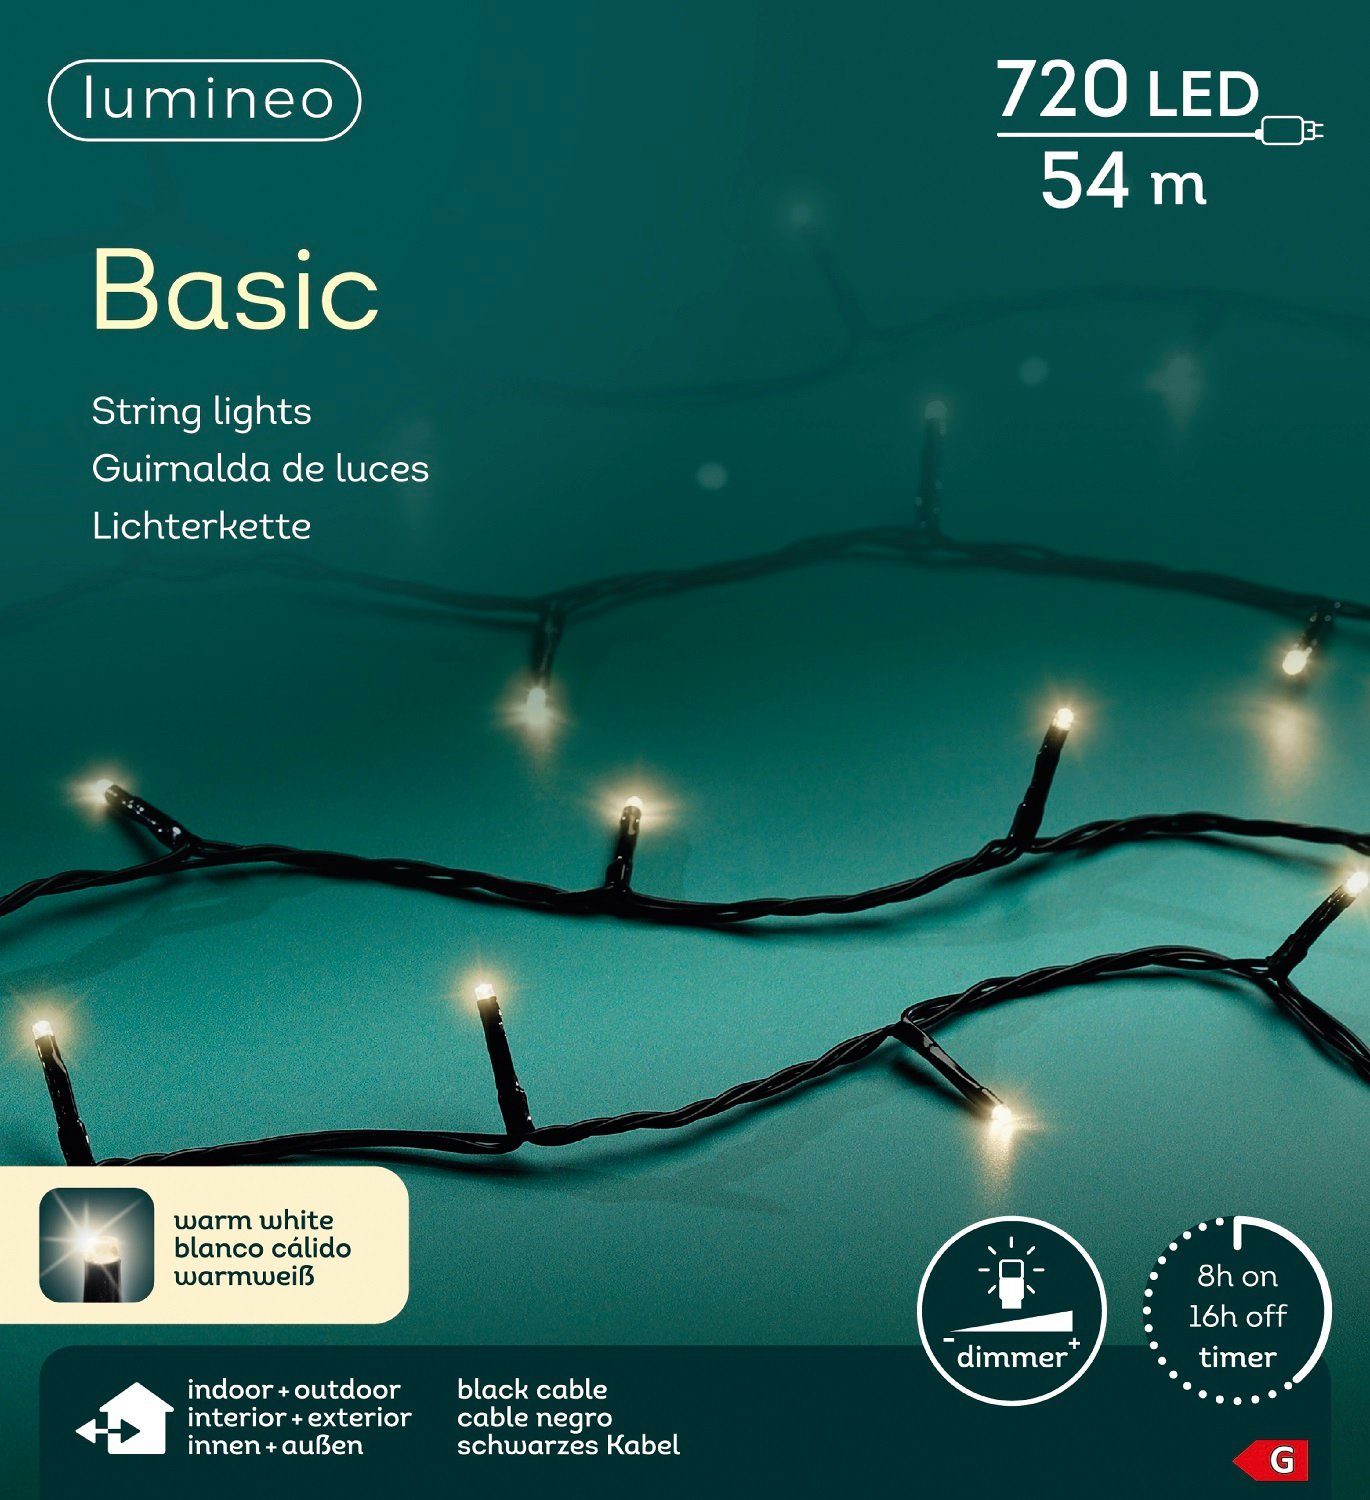 Outdoor Lumineo Lichterkette Indoor, LED-Lichterkette m 54 Timer, schwarzes Kabel, weiß, 720 LED Basic Lumineo warm Dimmbar,